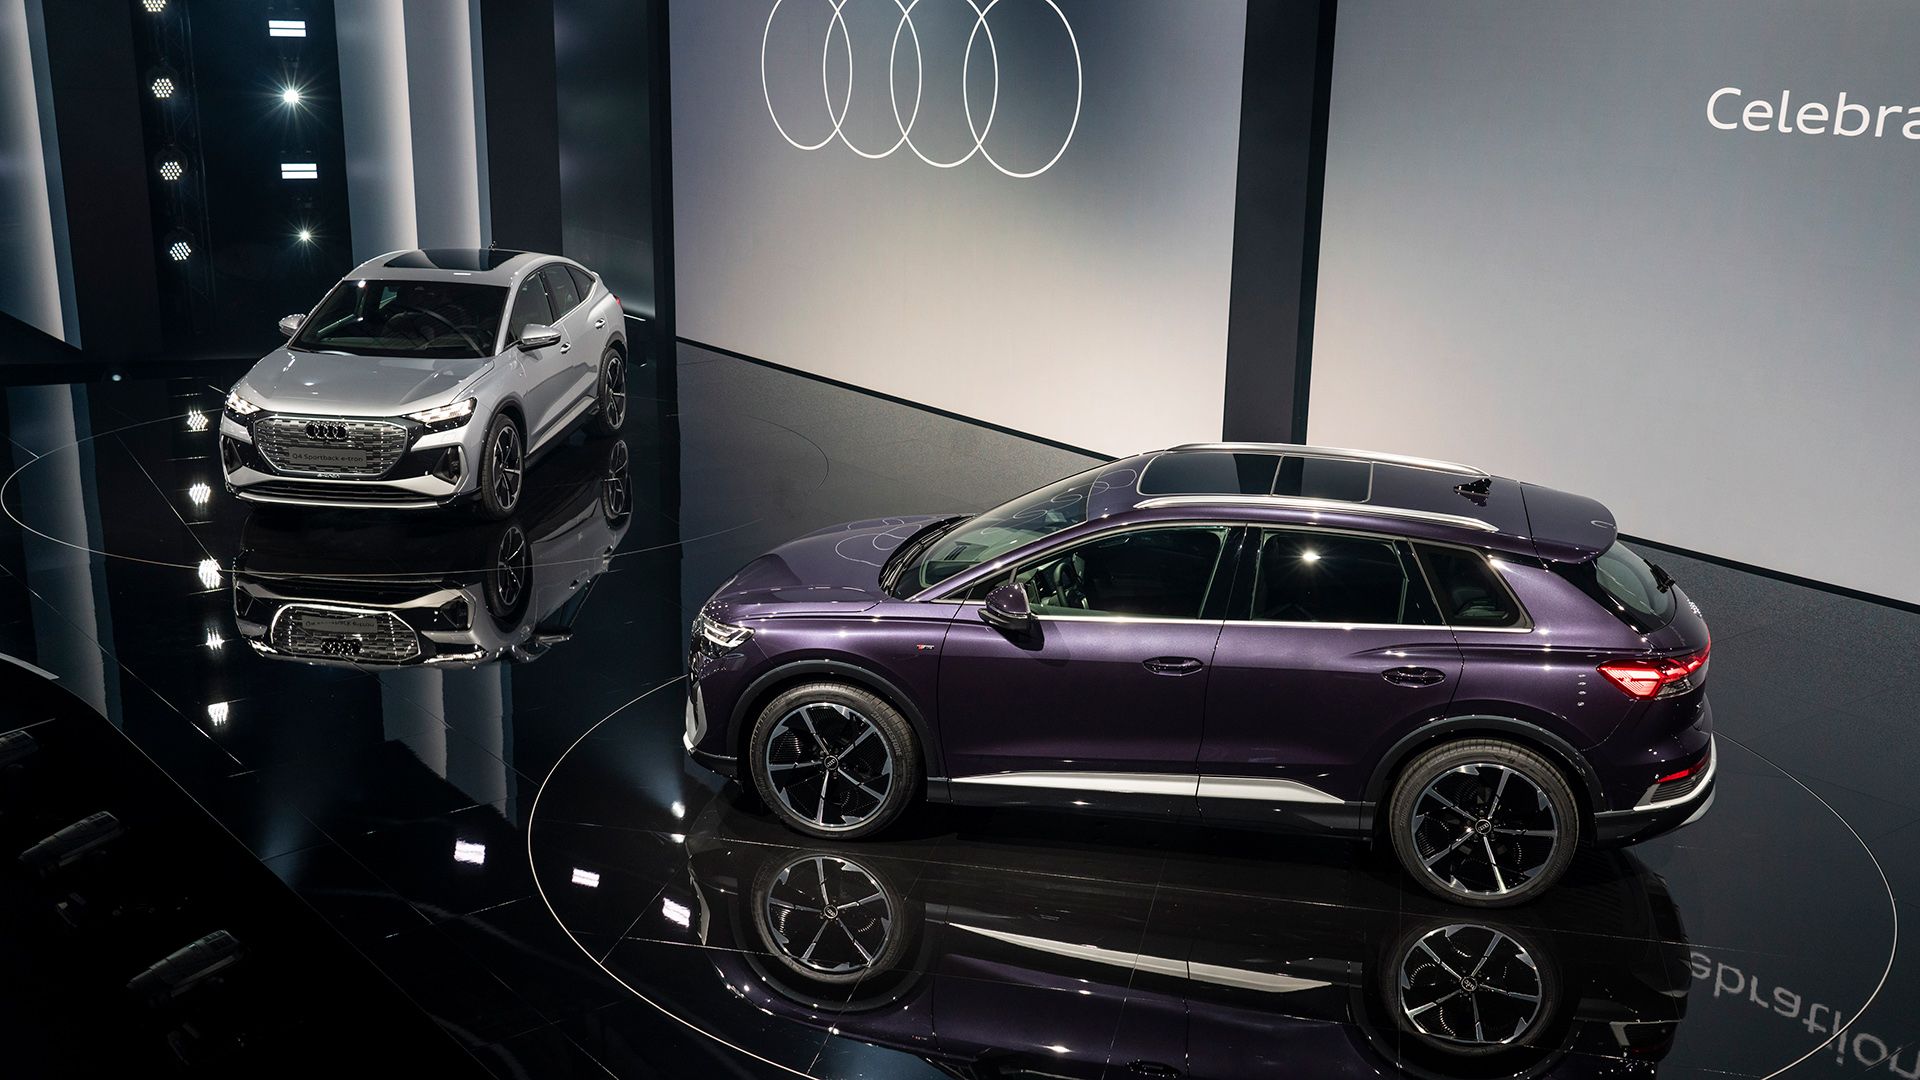 Auf dem Bild sieht man zwei Audi Q4 e-tron Modelle auf der Bühne stehen – silberfarben und lila.